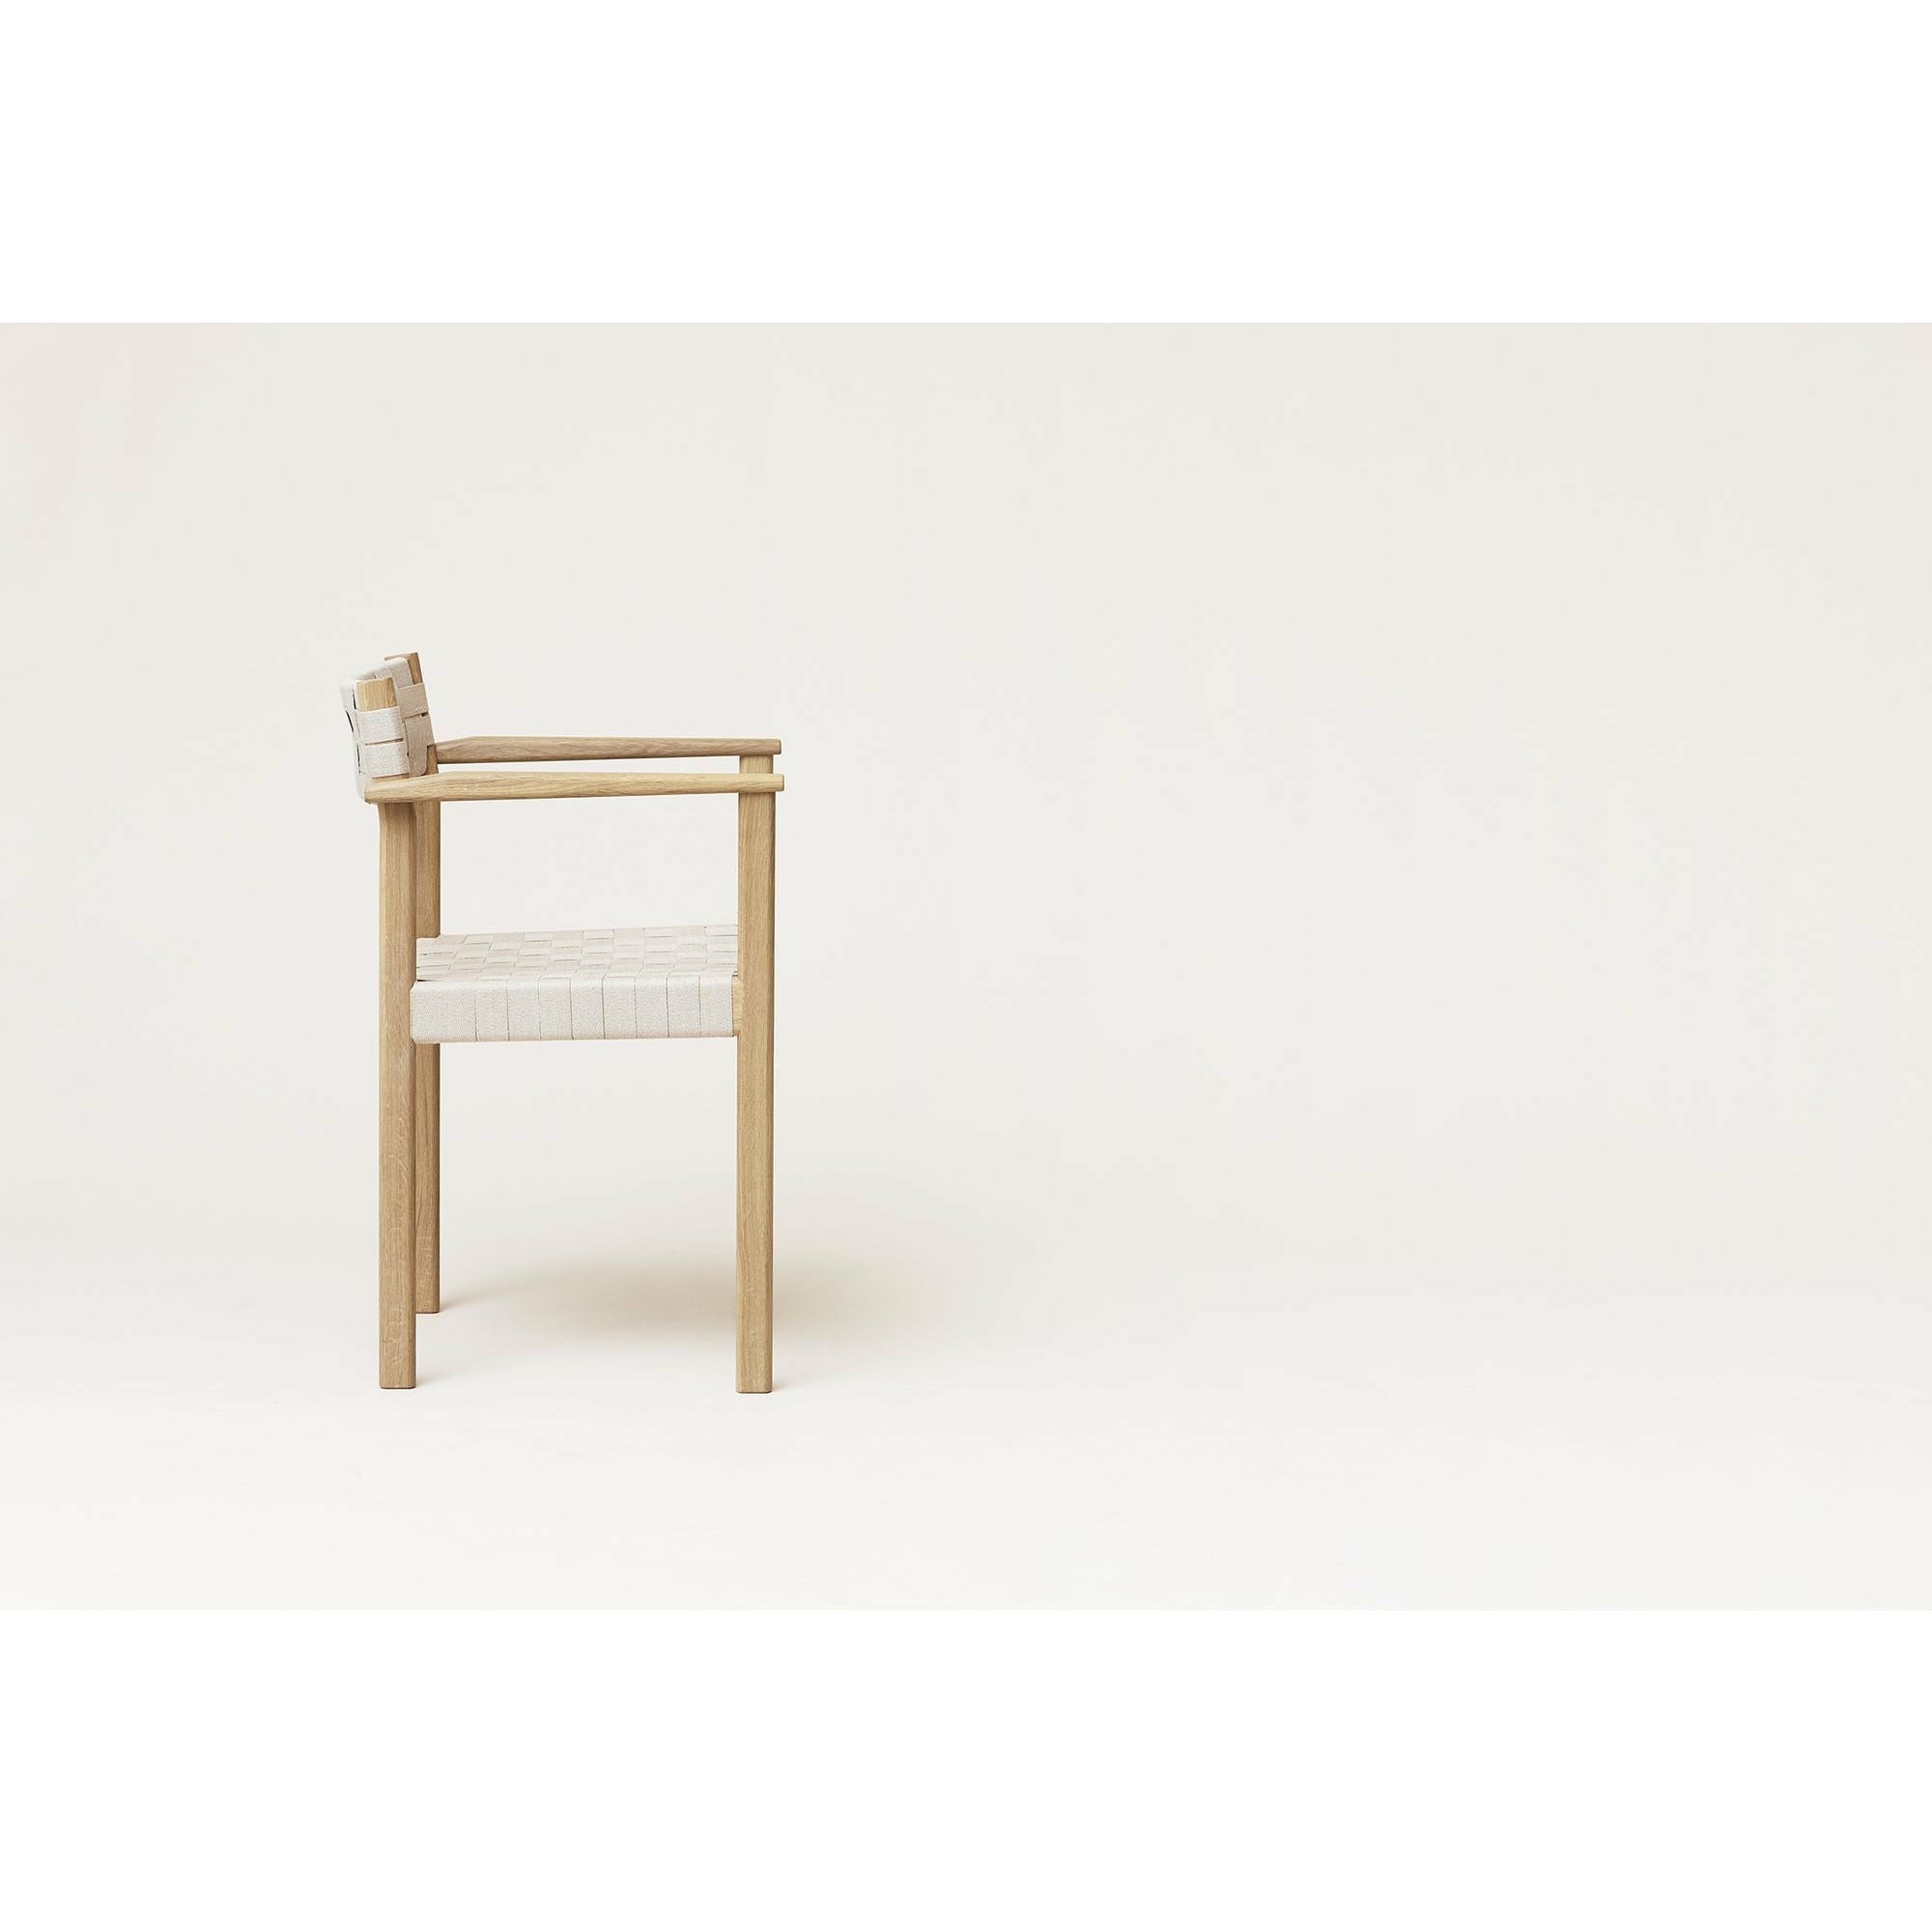 形式和完善的主题扶手椅。白油橡木